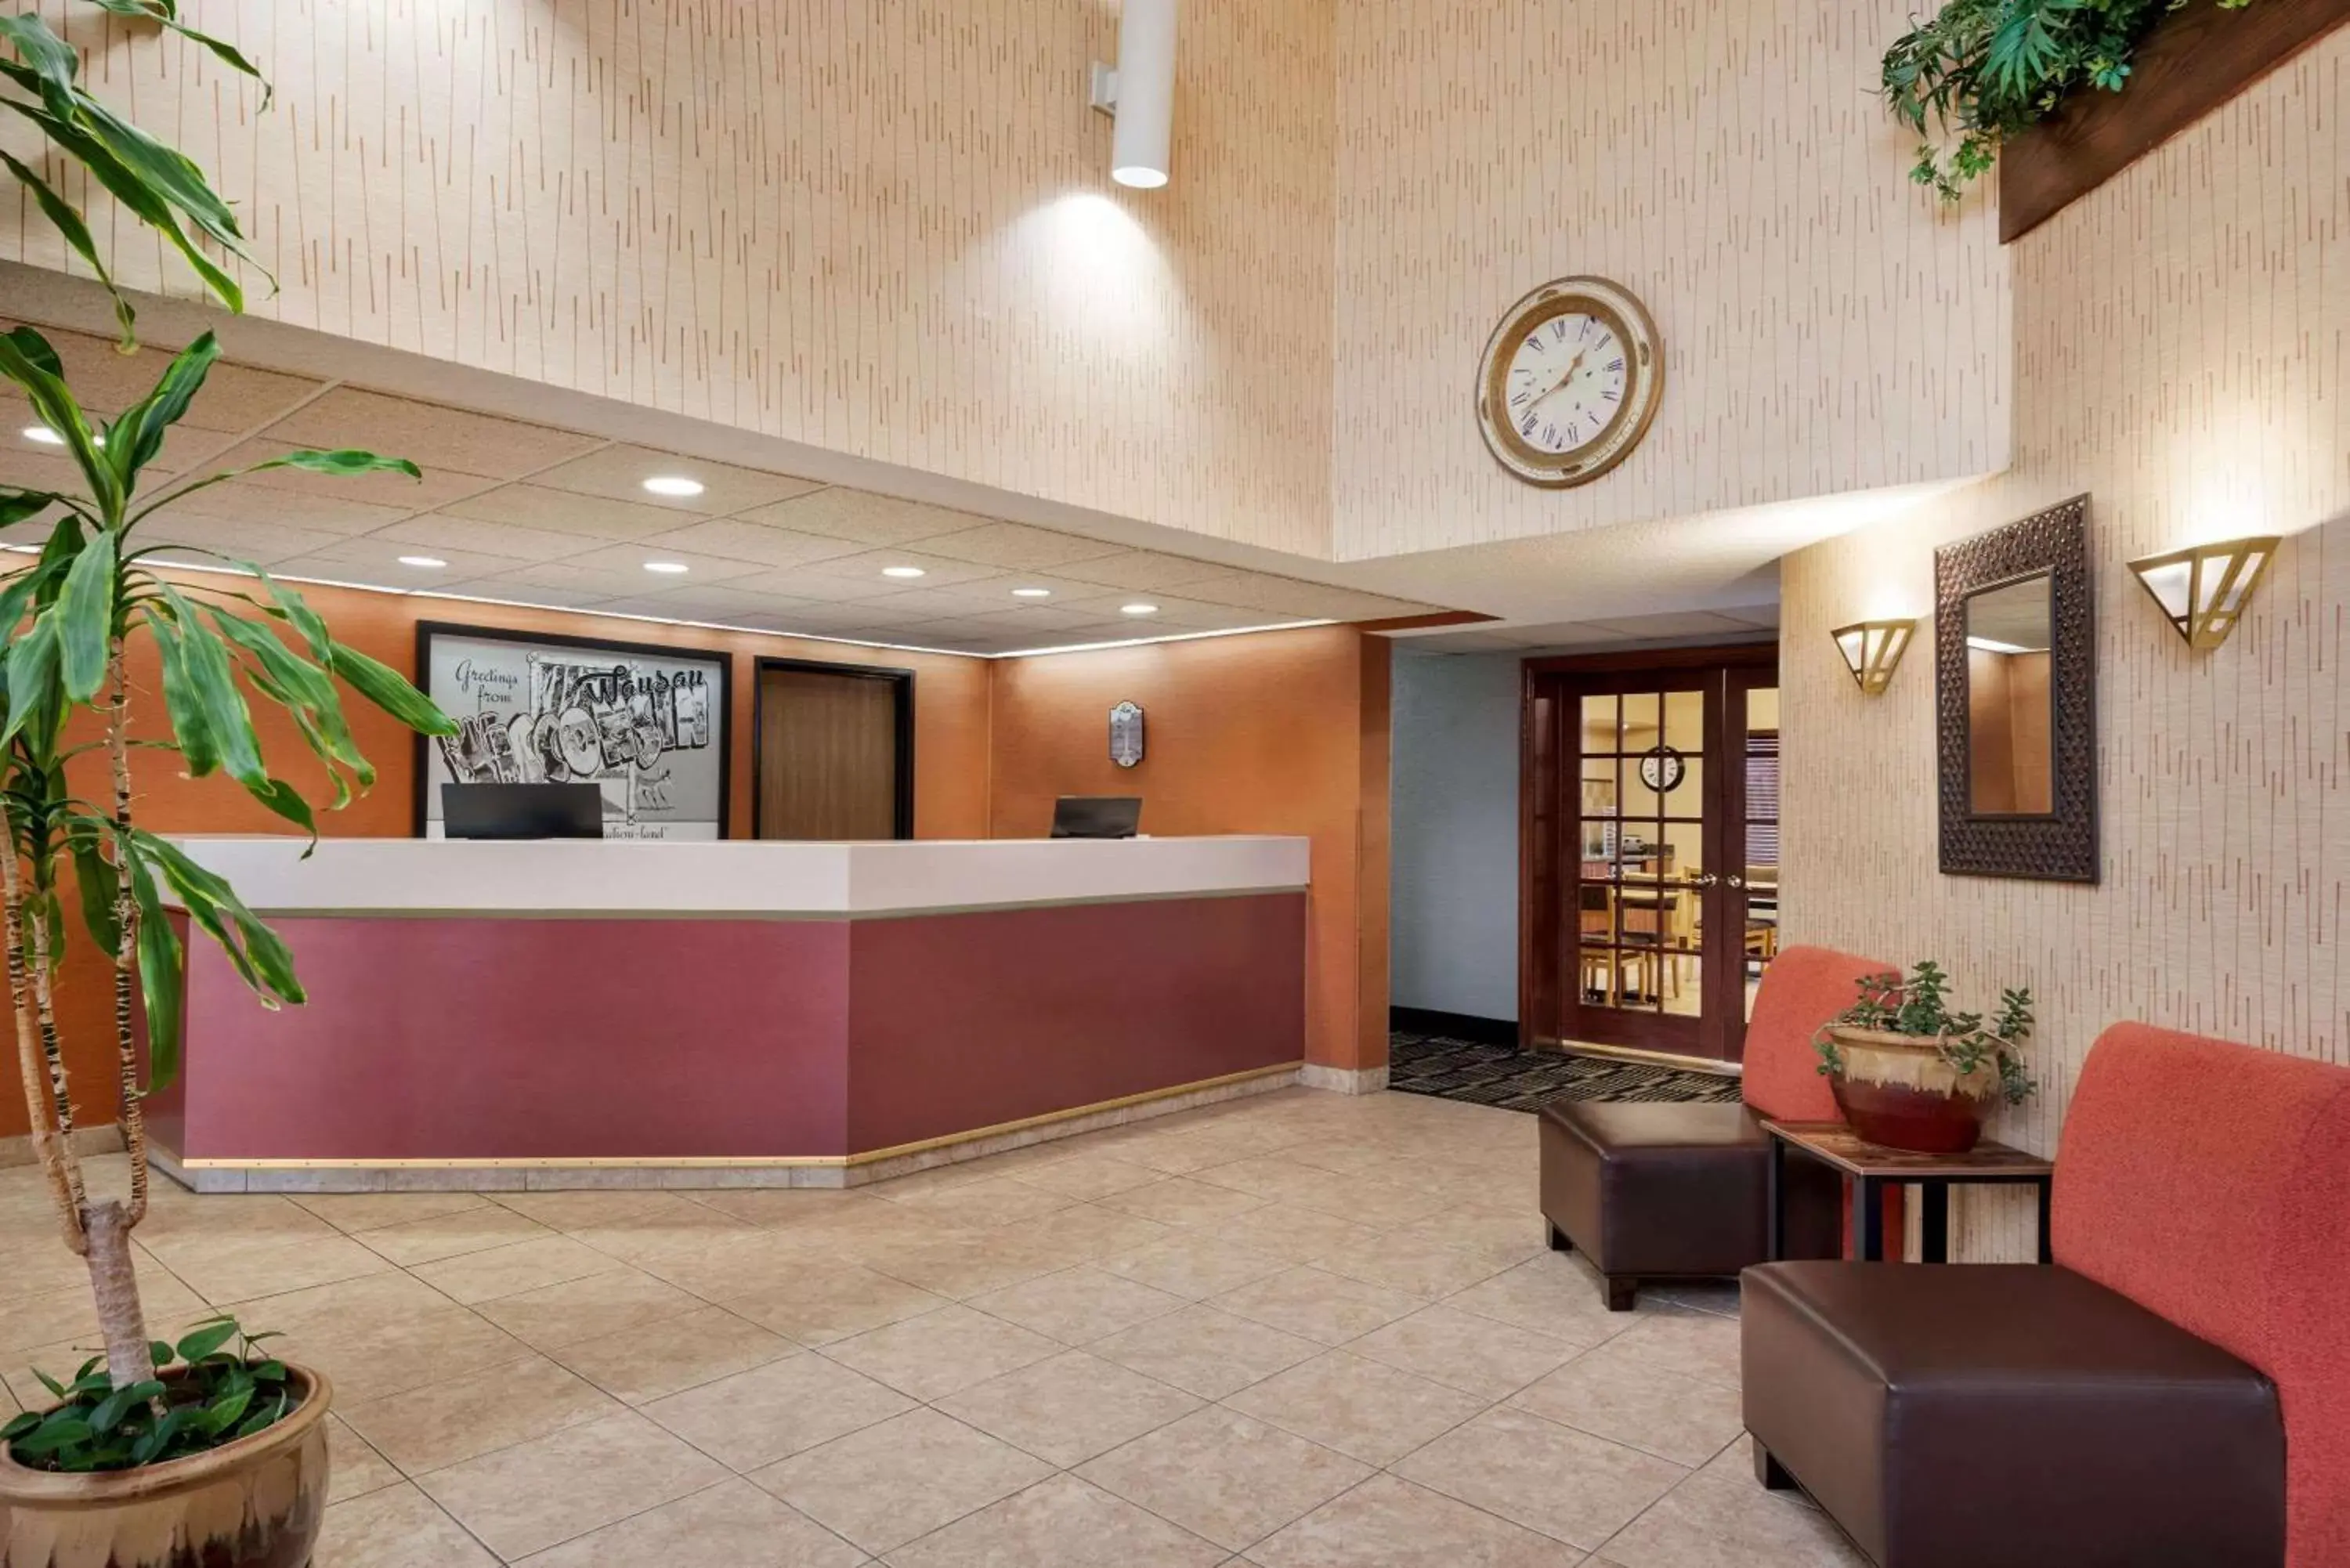 Lobby or reception, Lobby/Reception in Super 8 by Wyndham Wausau